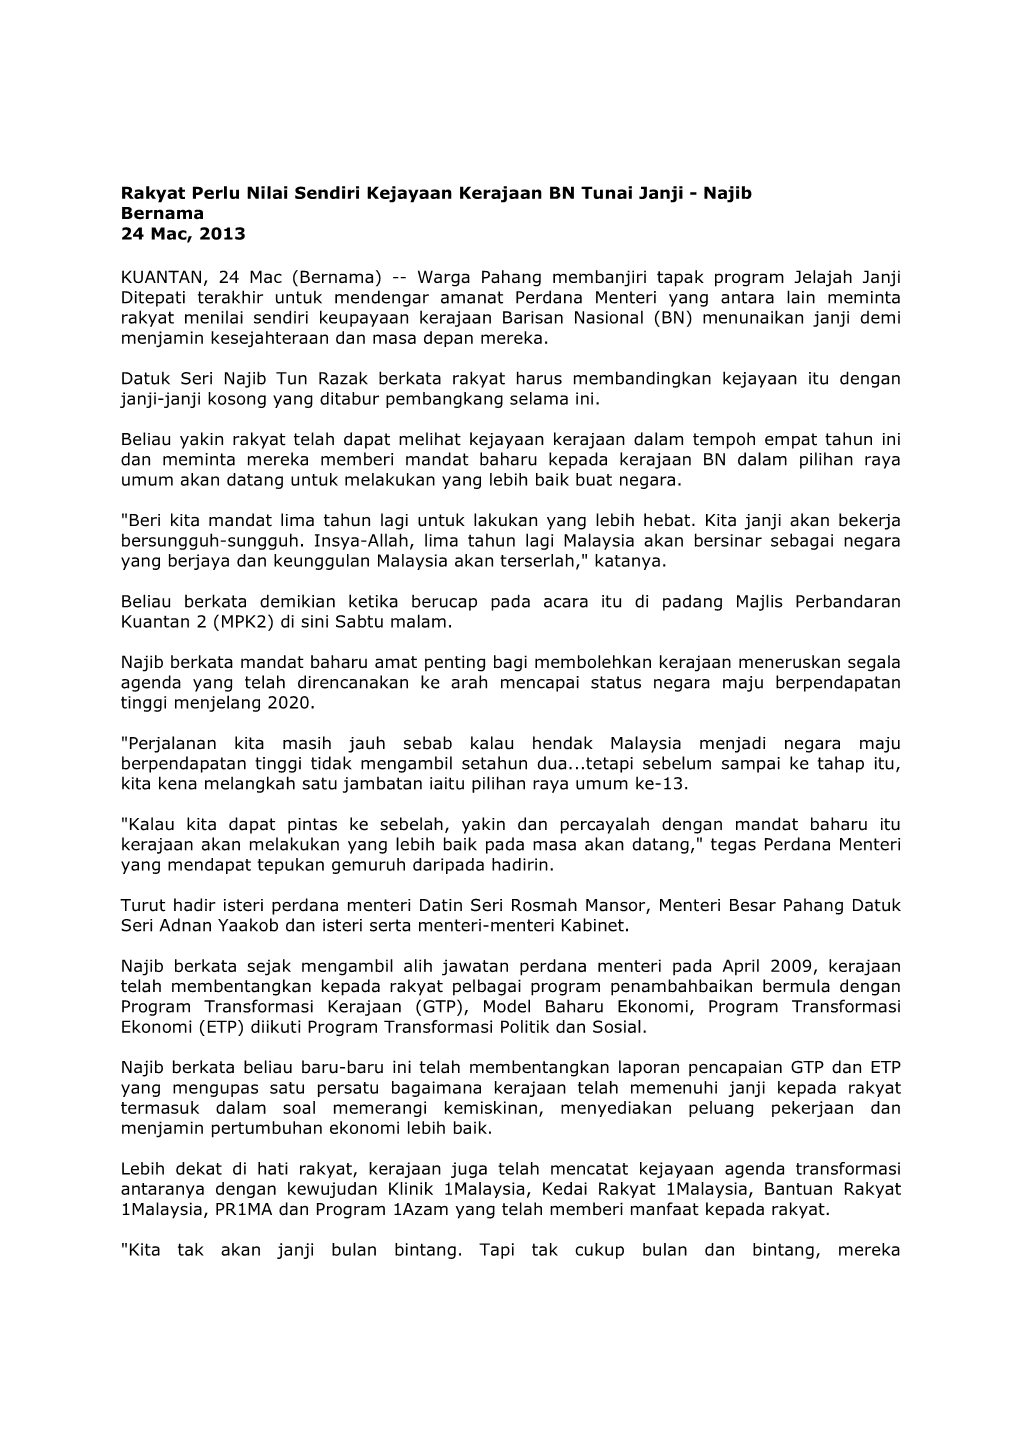 Rakyat Perlu Nilai Sendiri Kejayaan Kerajaan BN Tunai Janji - Najib Bernama 24 Mac, 2013